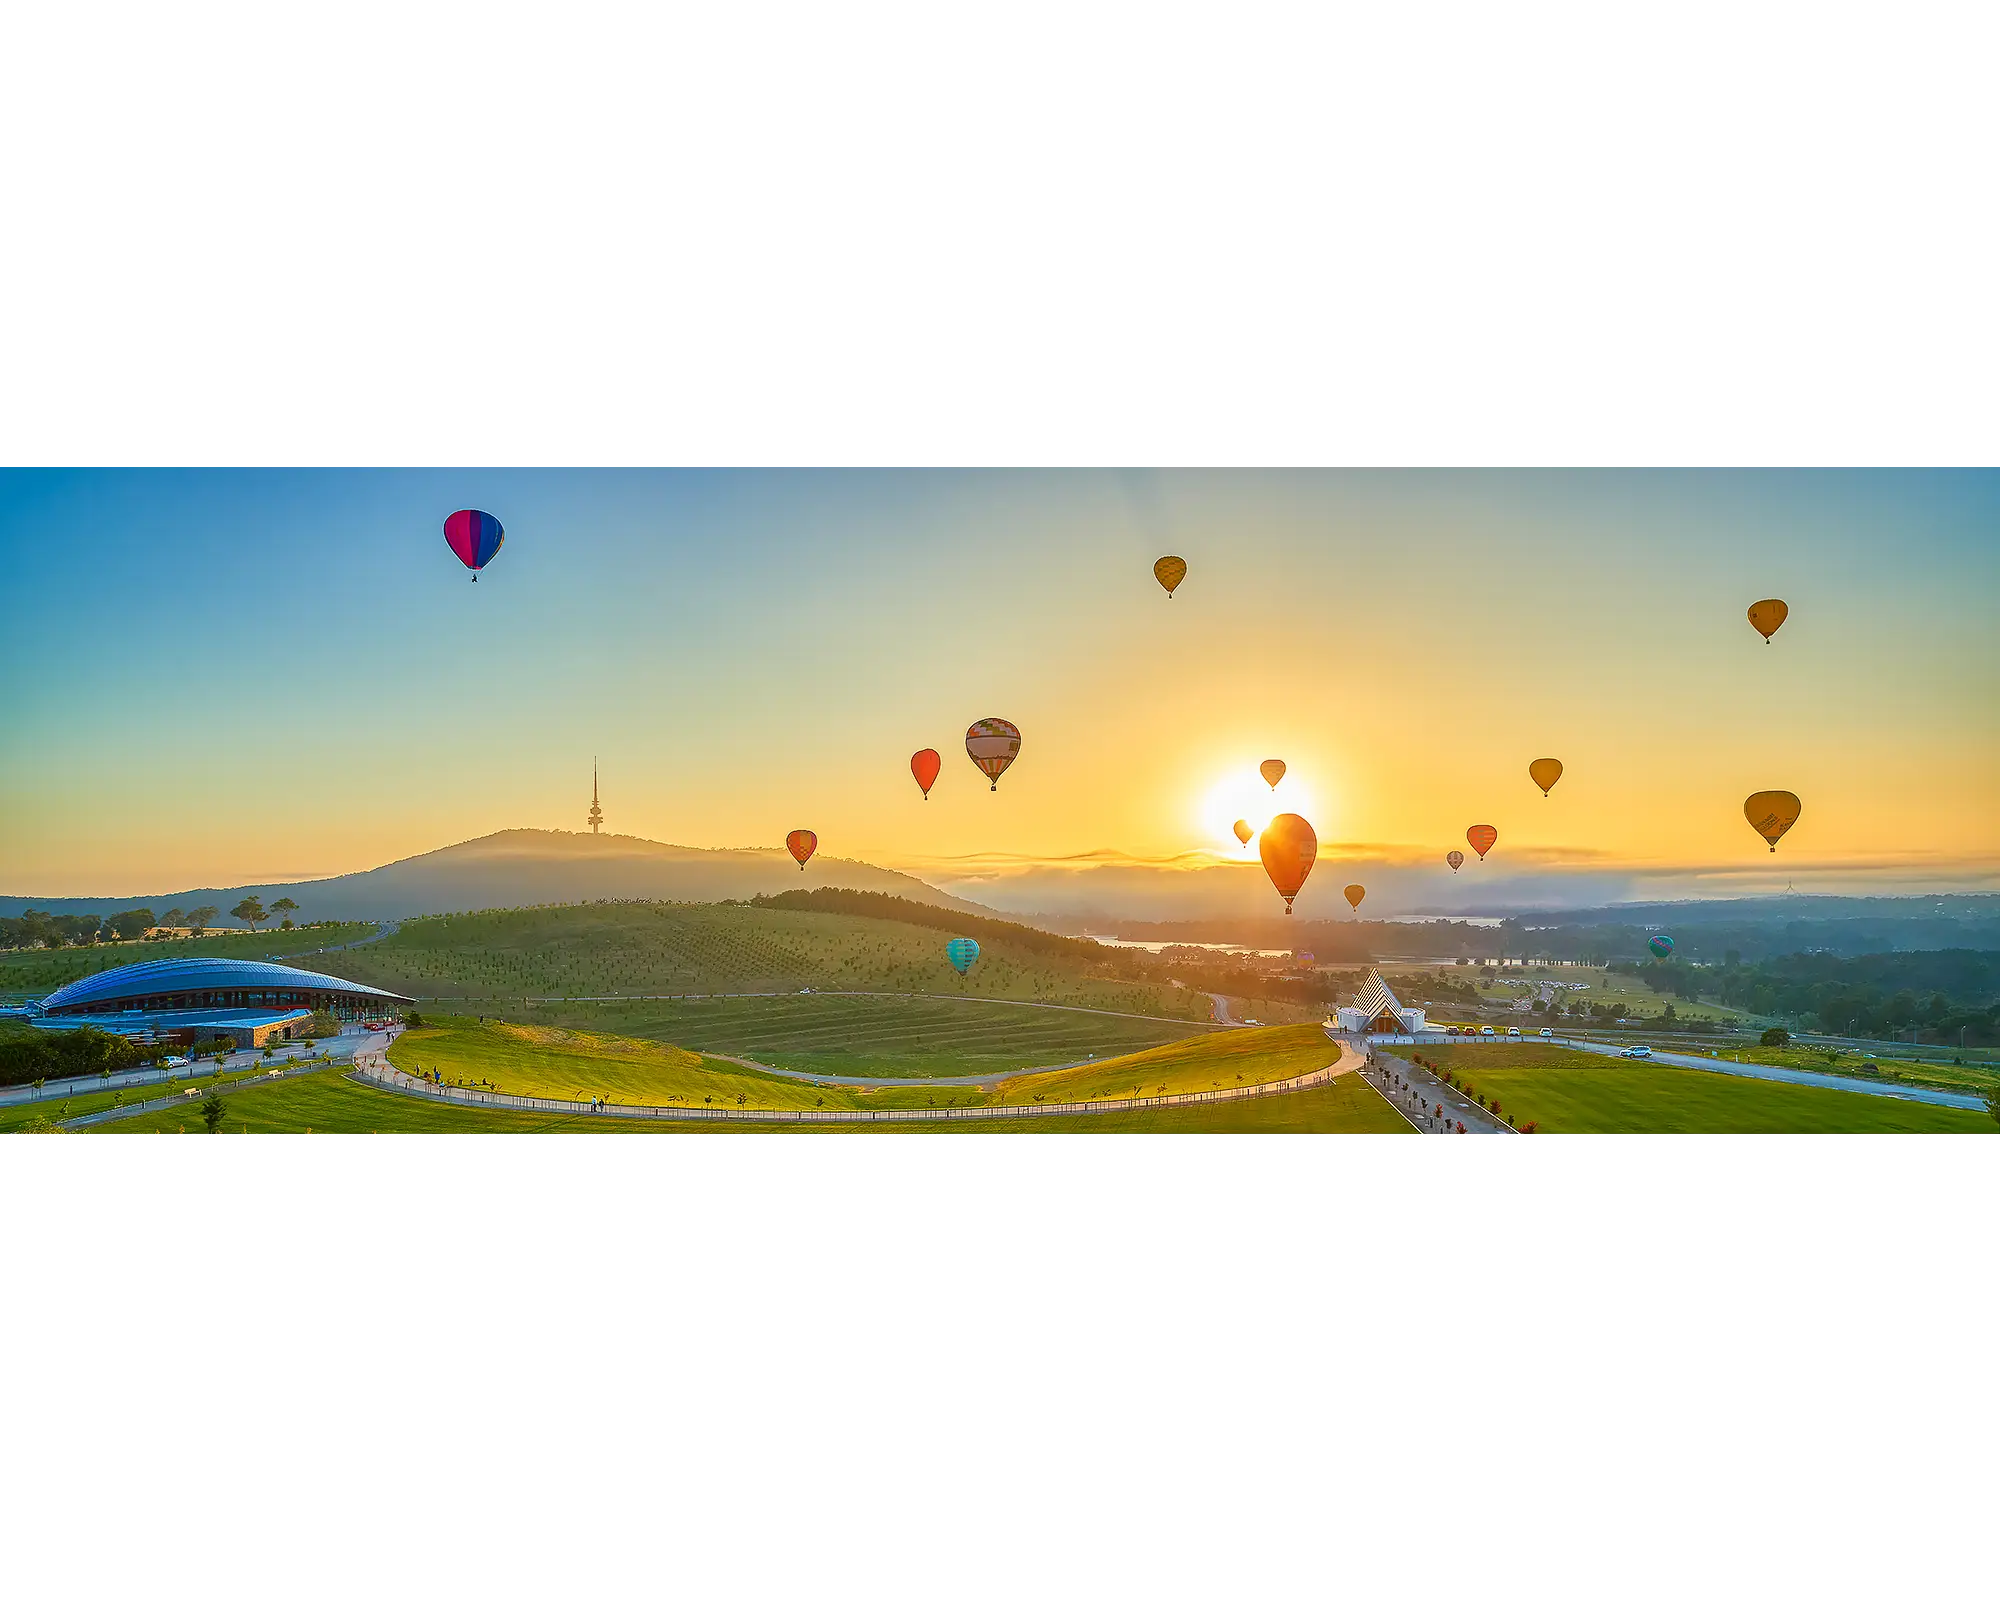 Balloon Sunrise - Enlighten festival Balloon Spectacular, National Arboretum, Canberra.